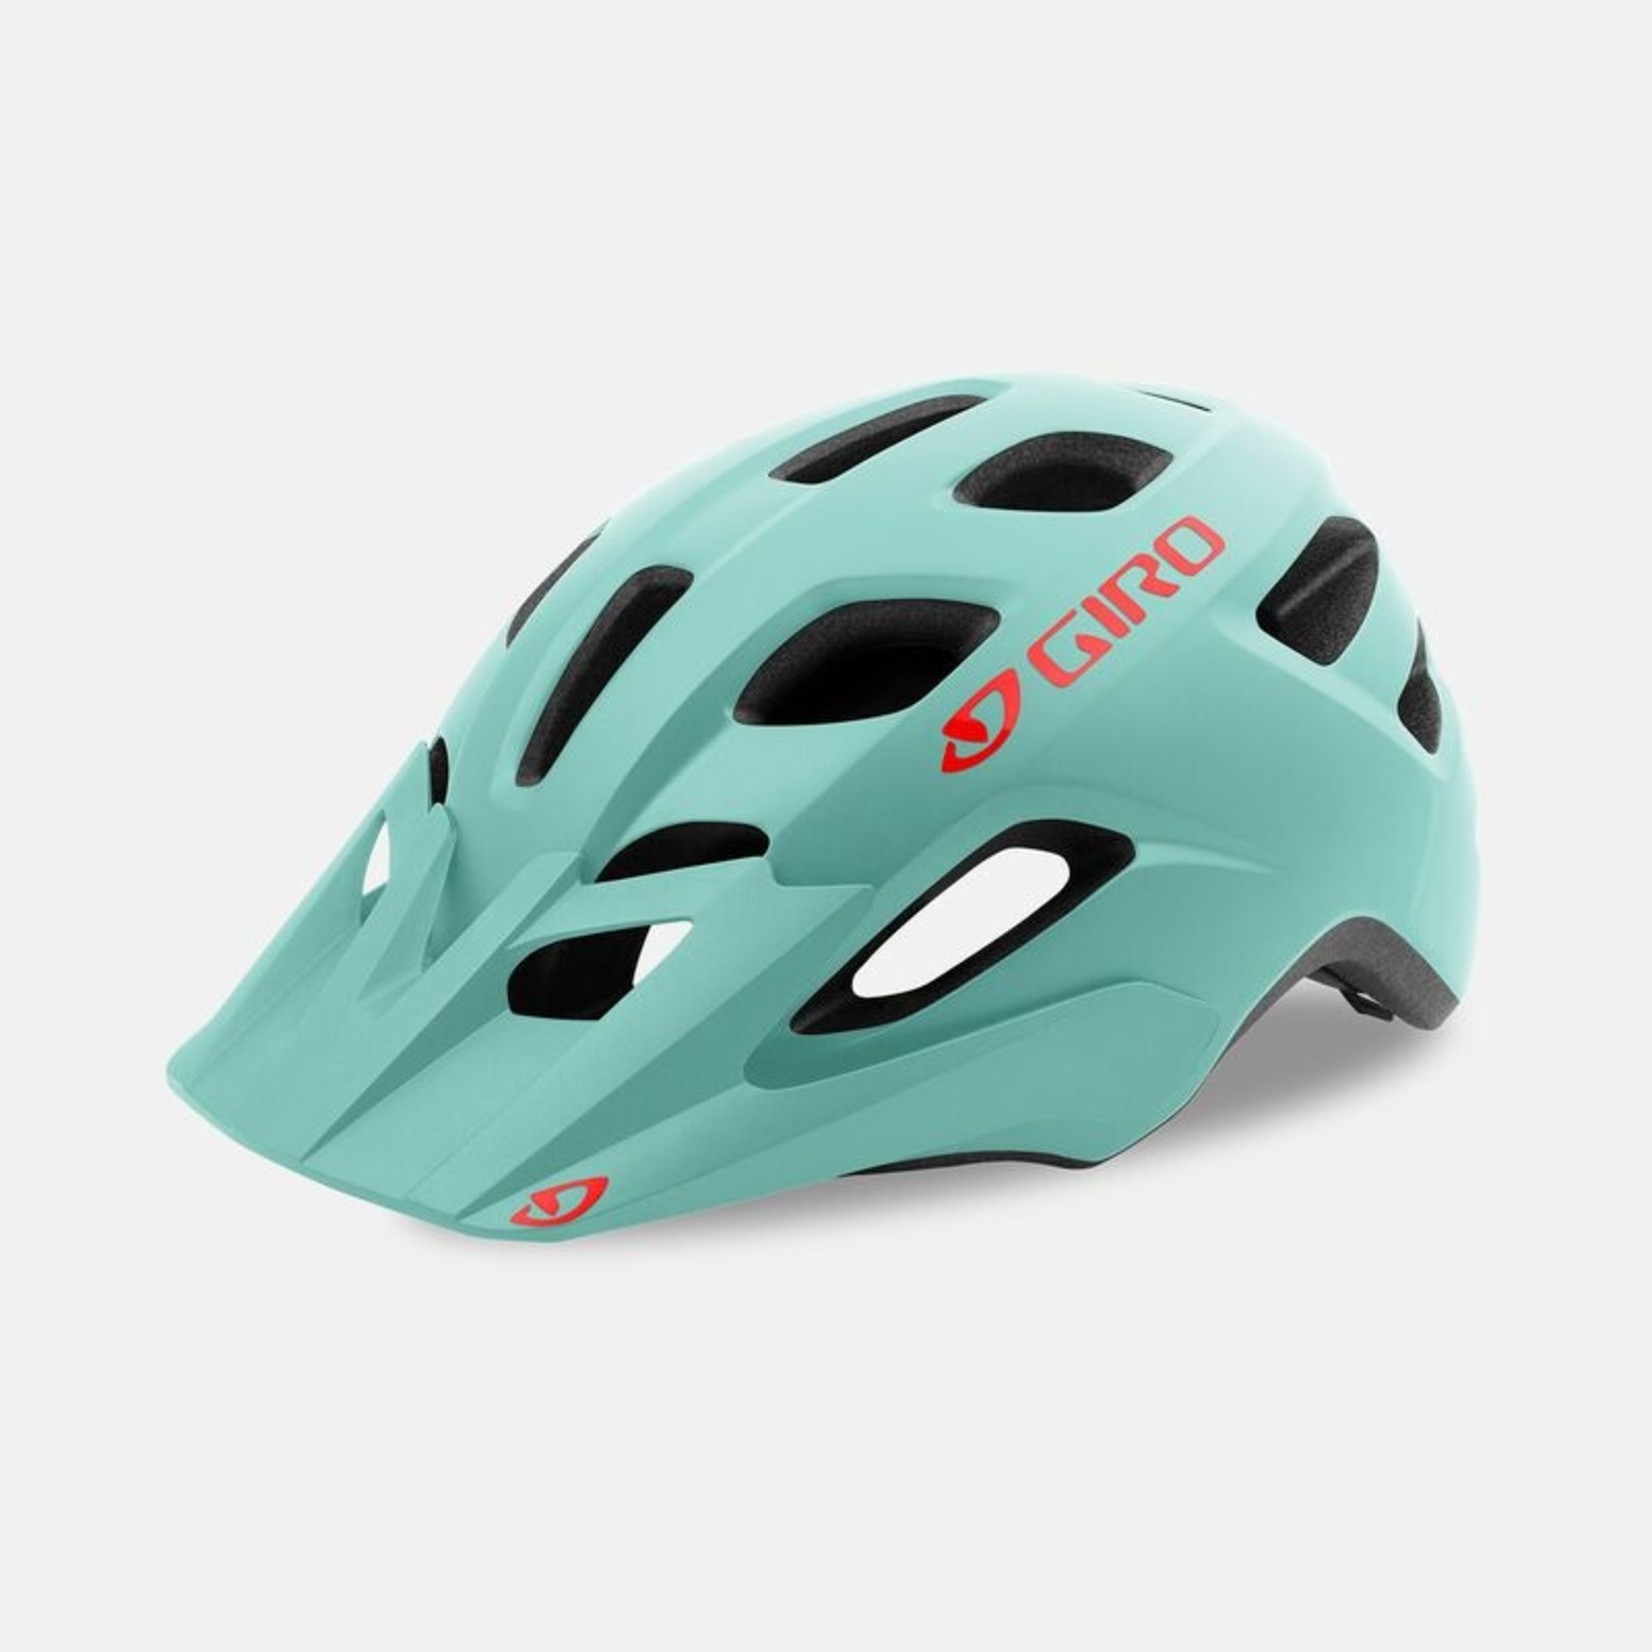 2021 Giro Fixture MIPS Helmet